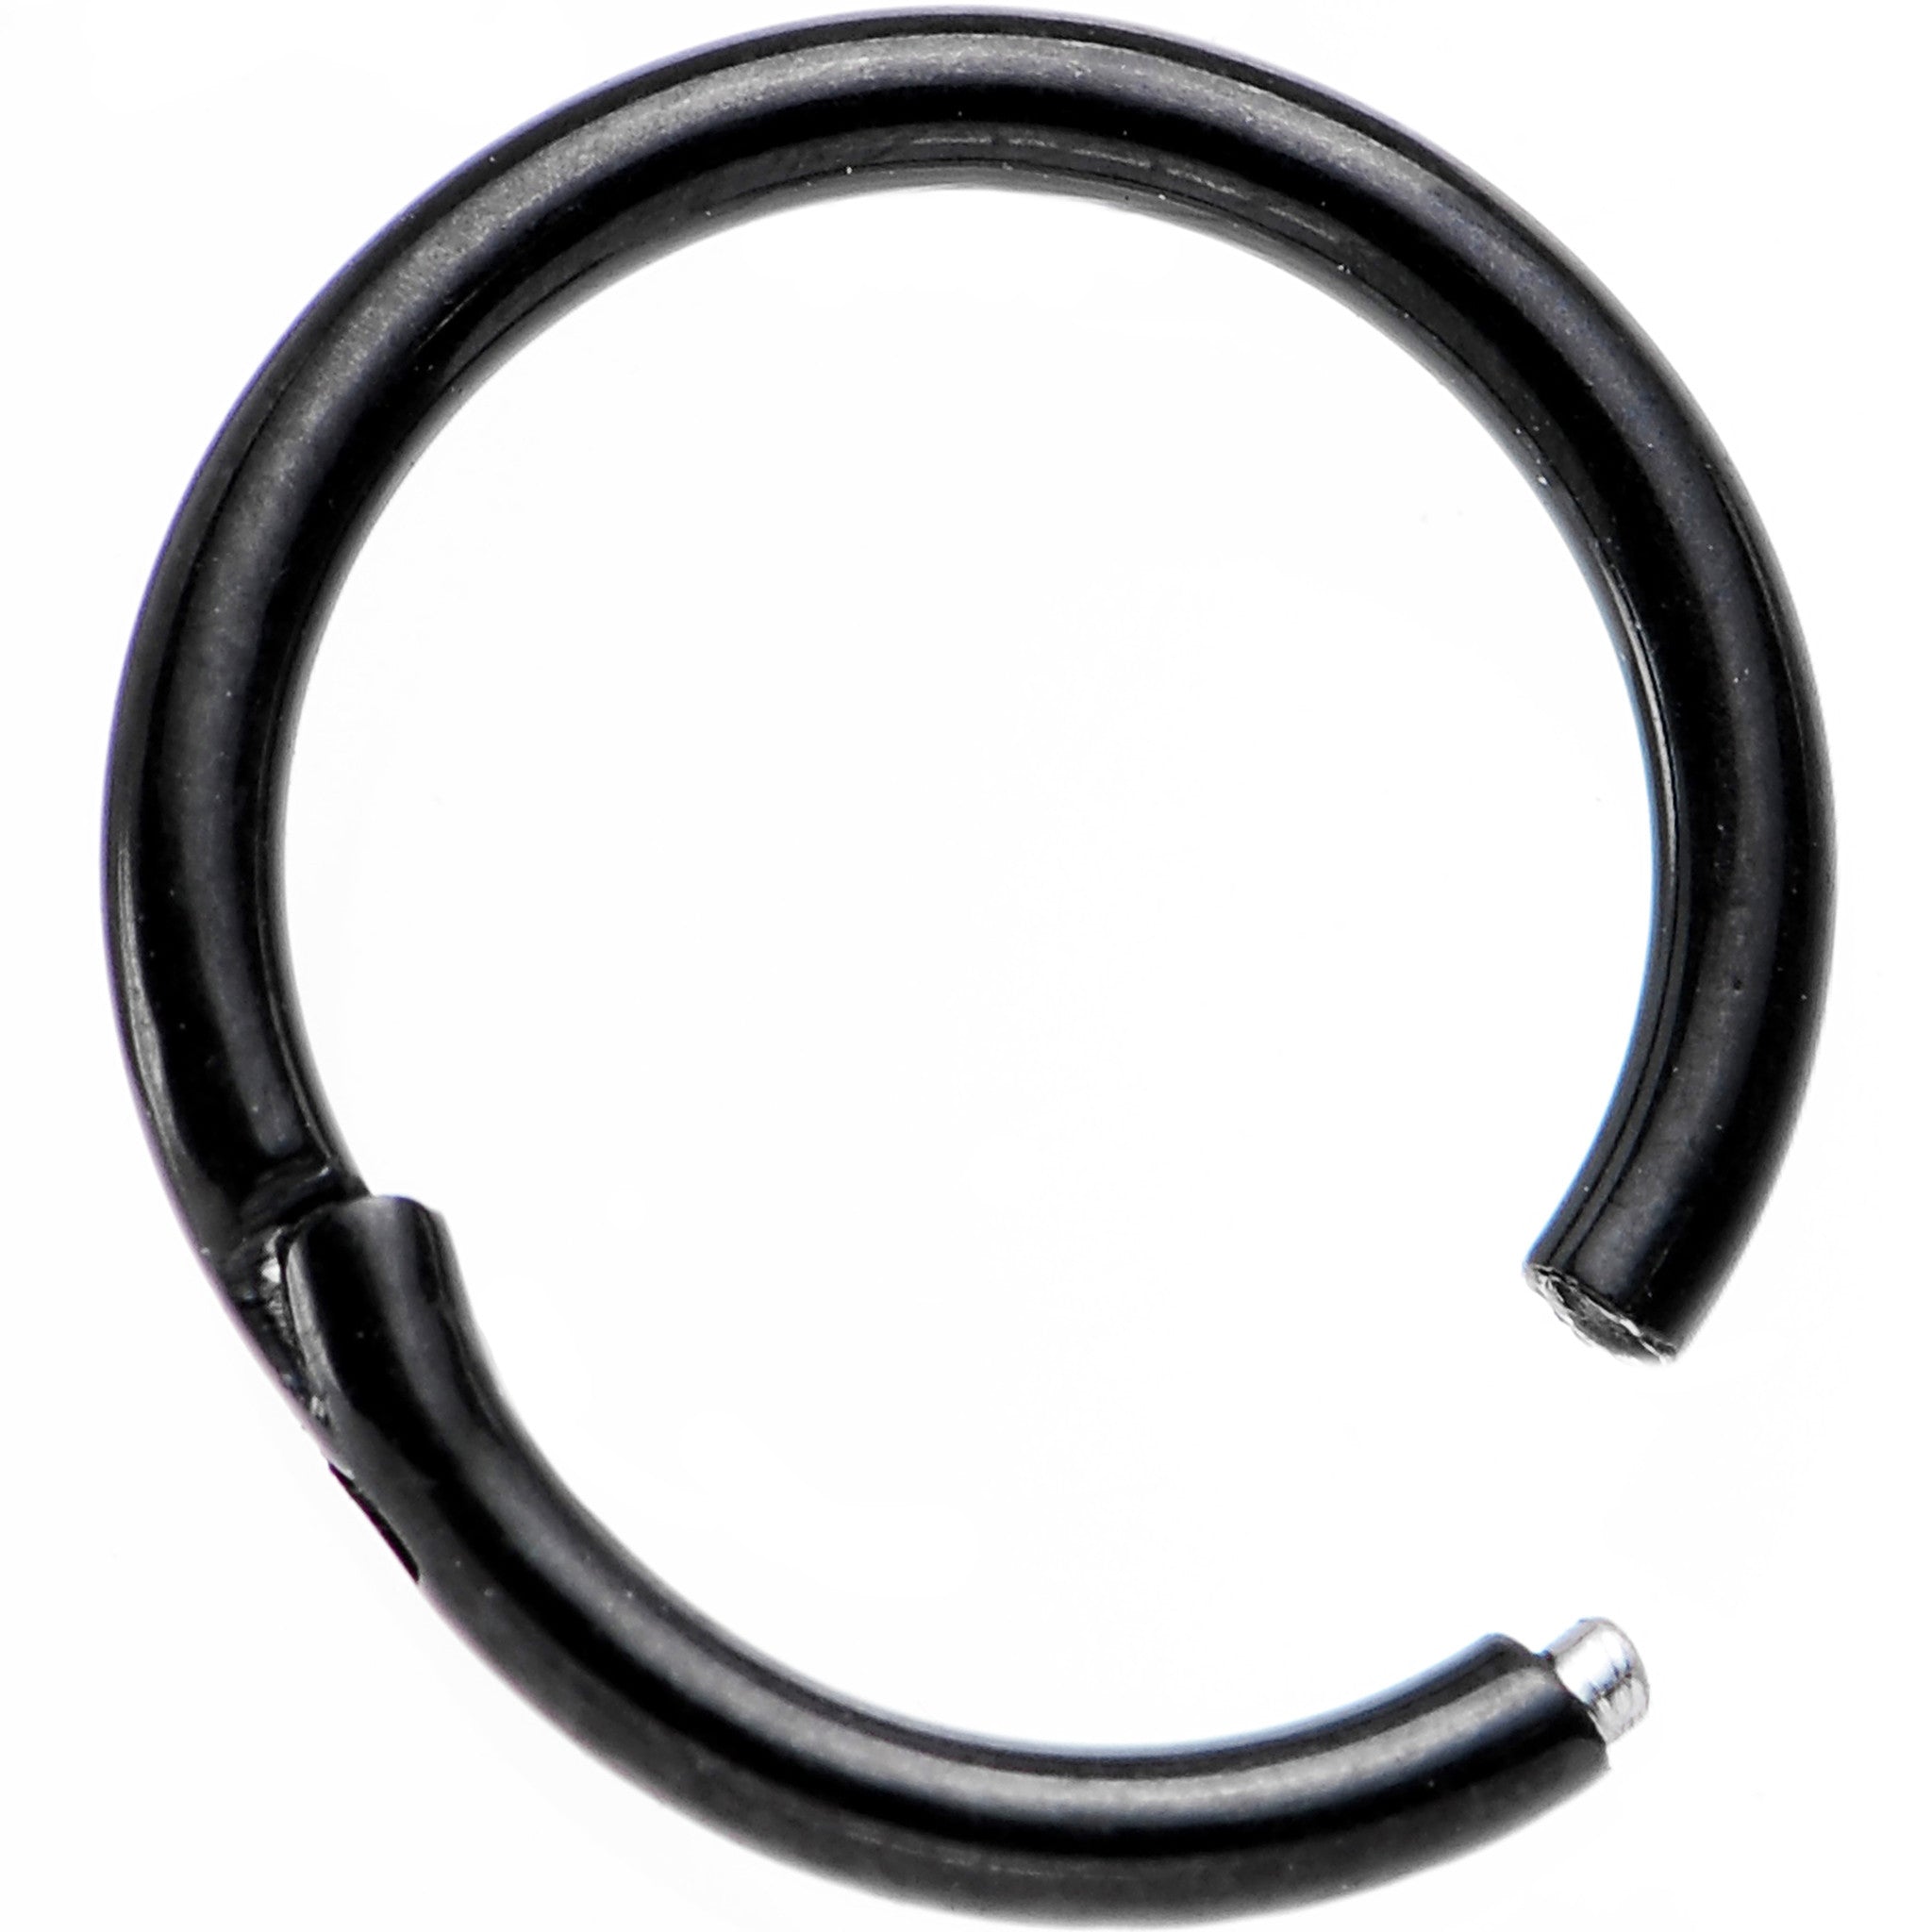 16 Gauge 5/16 Black PVD Hinged Segment Ring